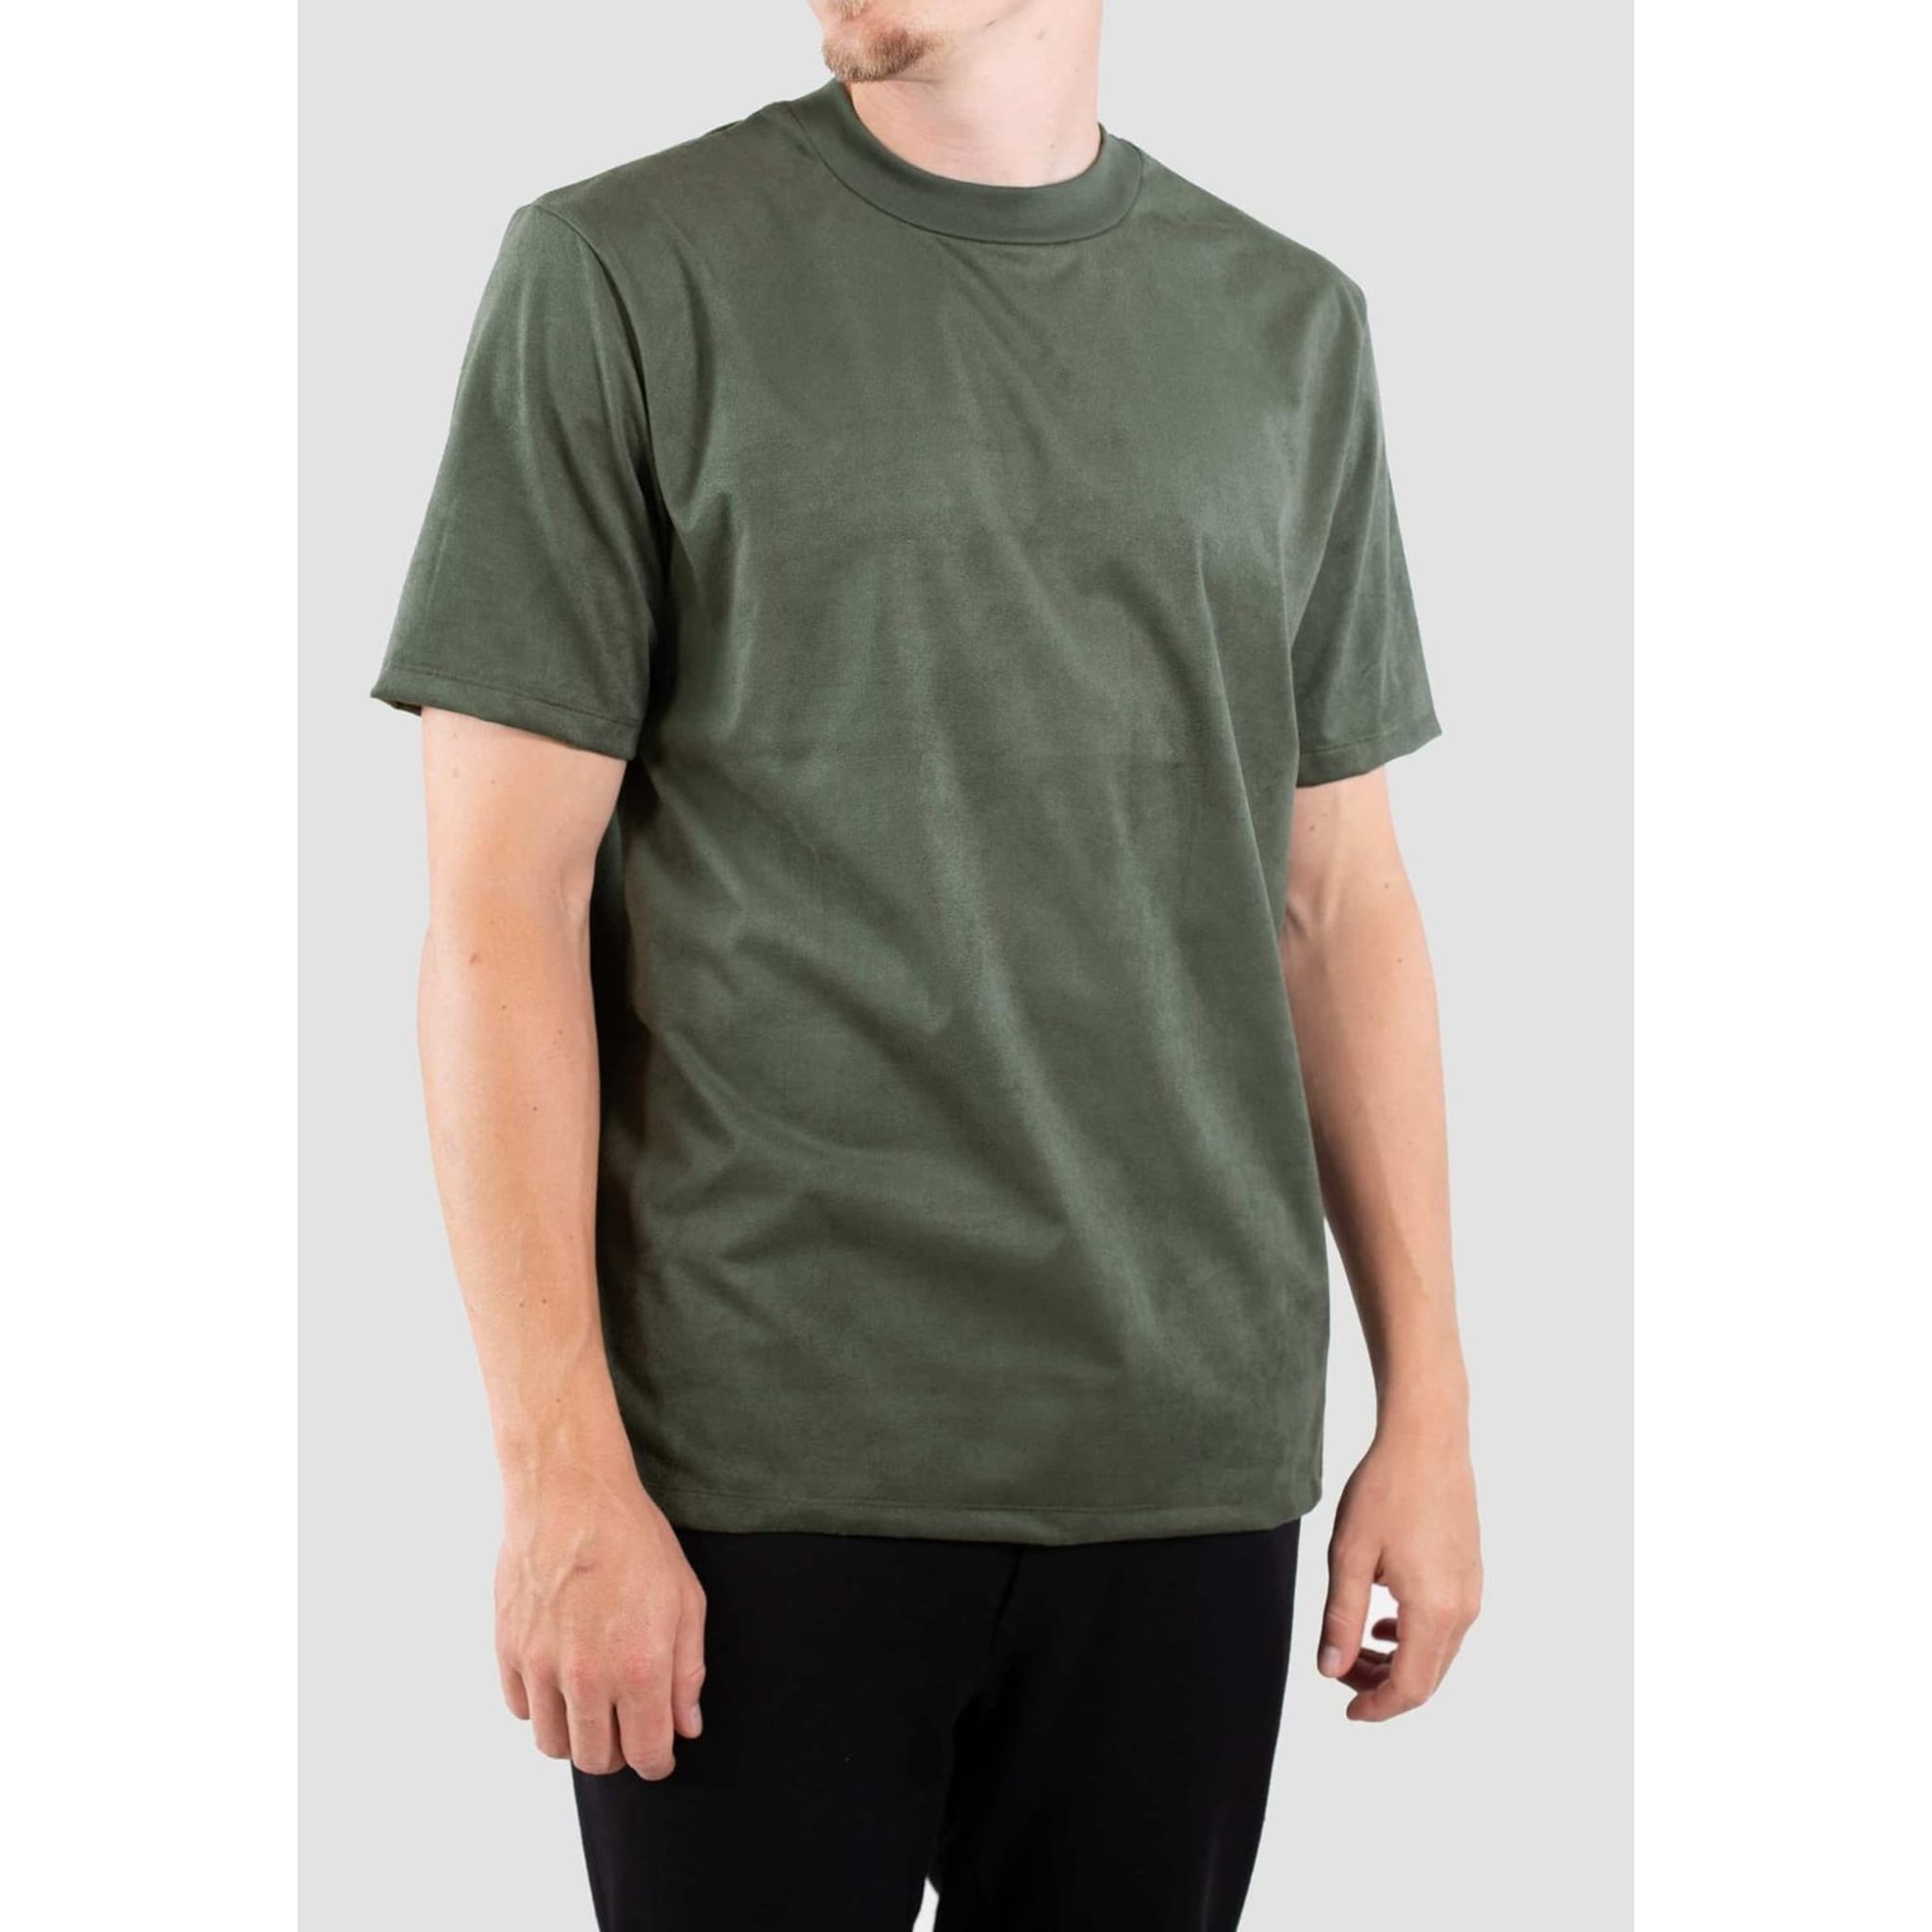 Jai Faux Suede T-shirt - Moss Green, green